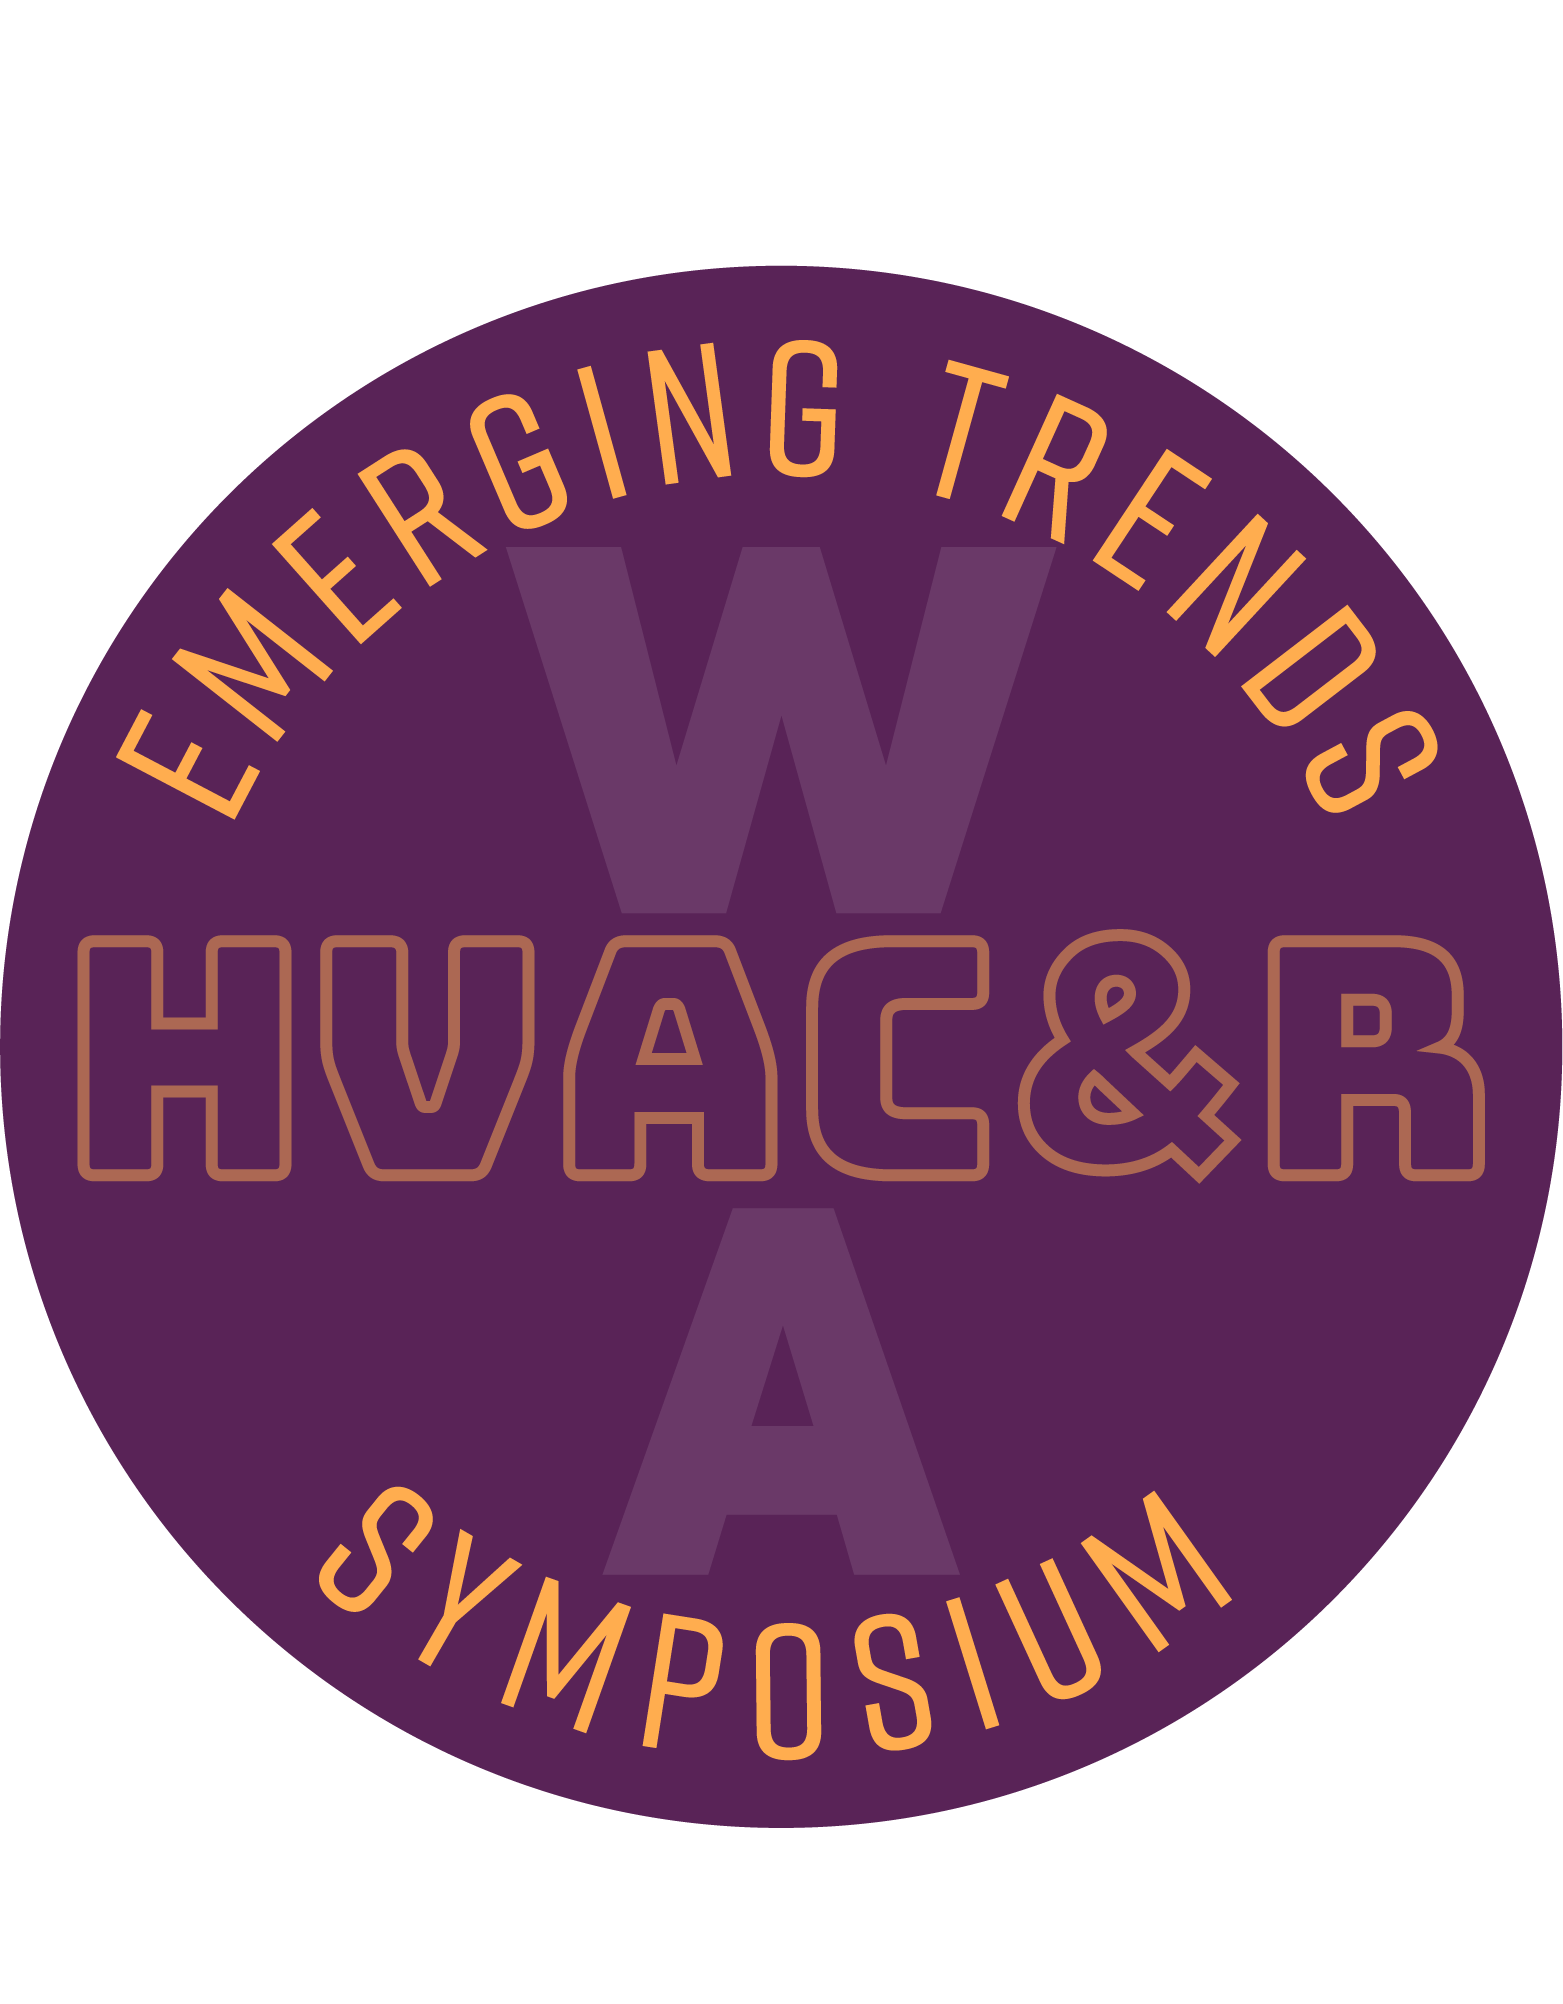 AIRAH's HVAC&R Emerging Trends Symposium